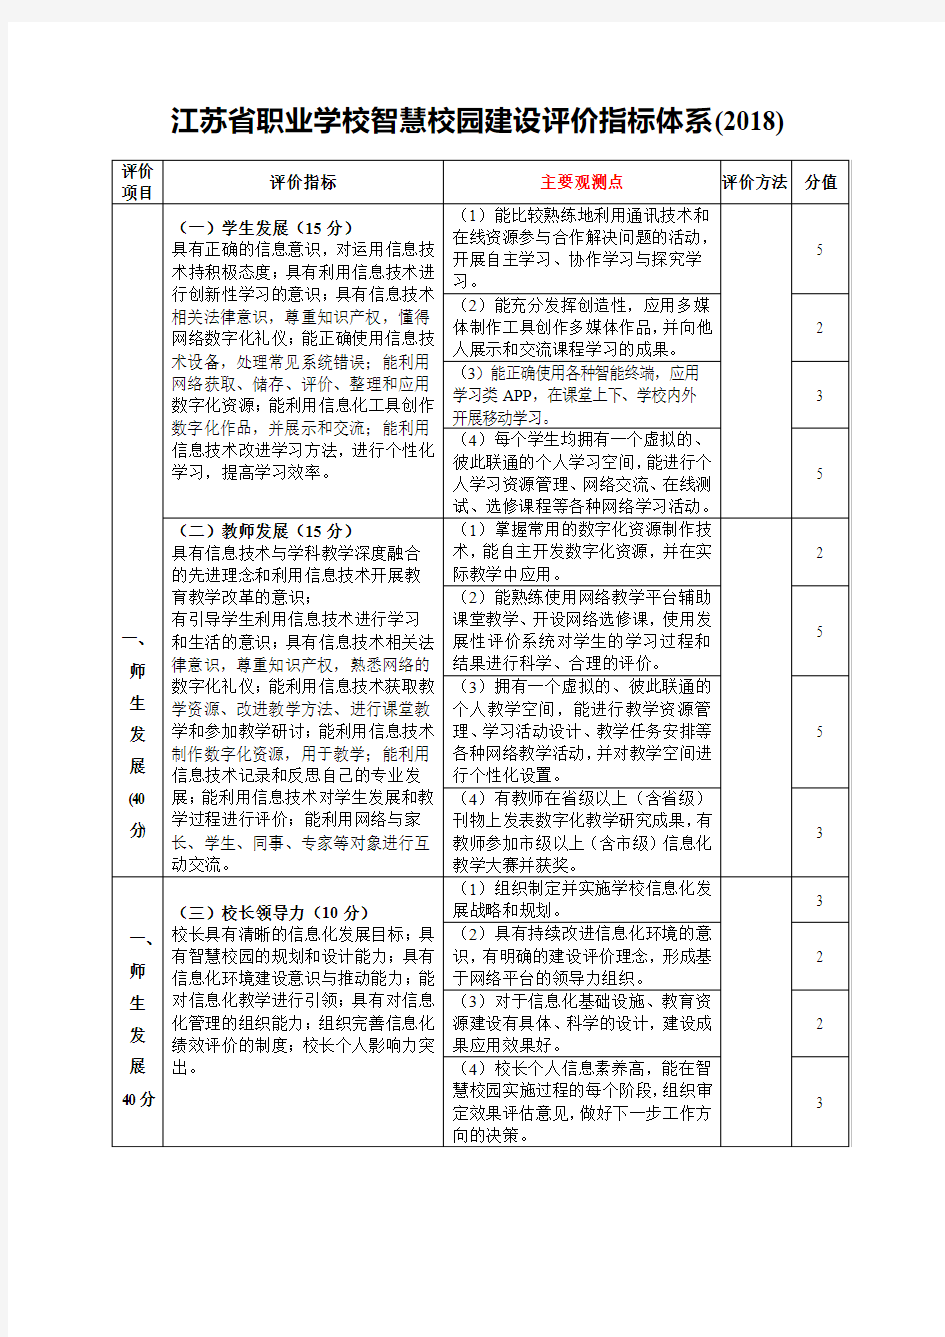 江苏省职业学校智慧校园建设评价指标体系